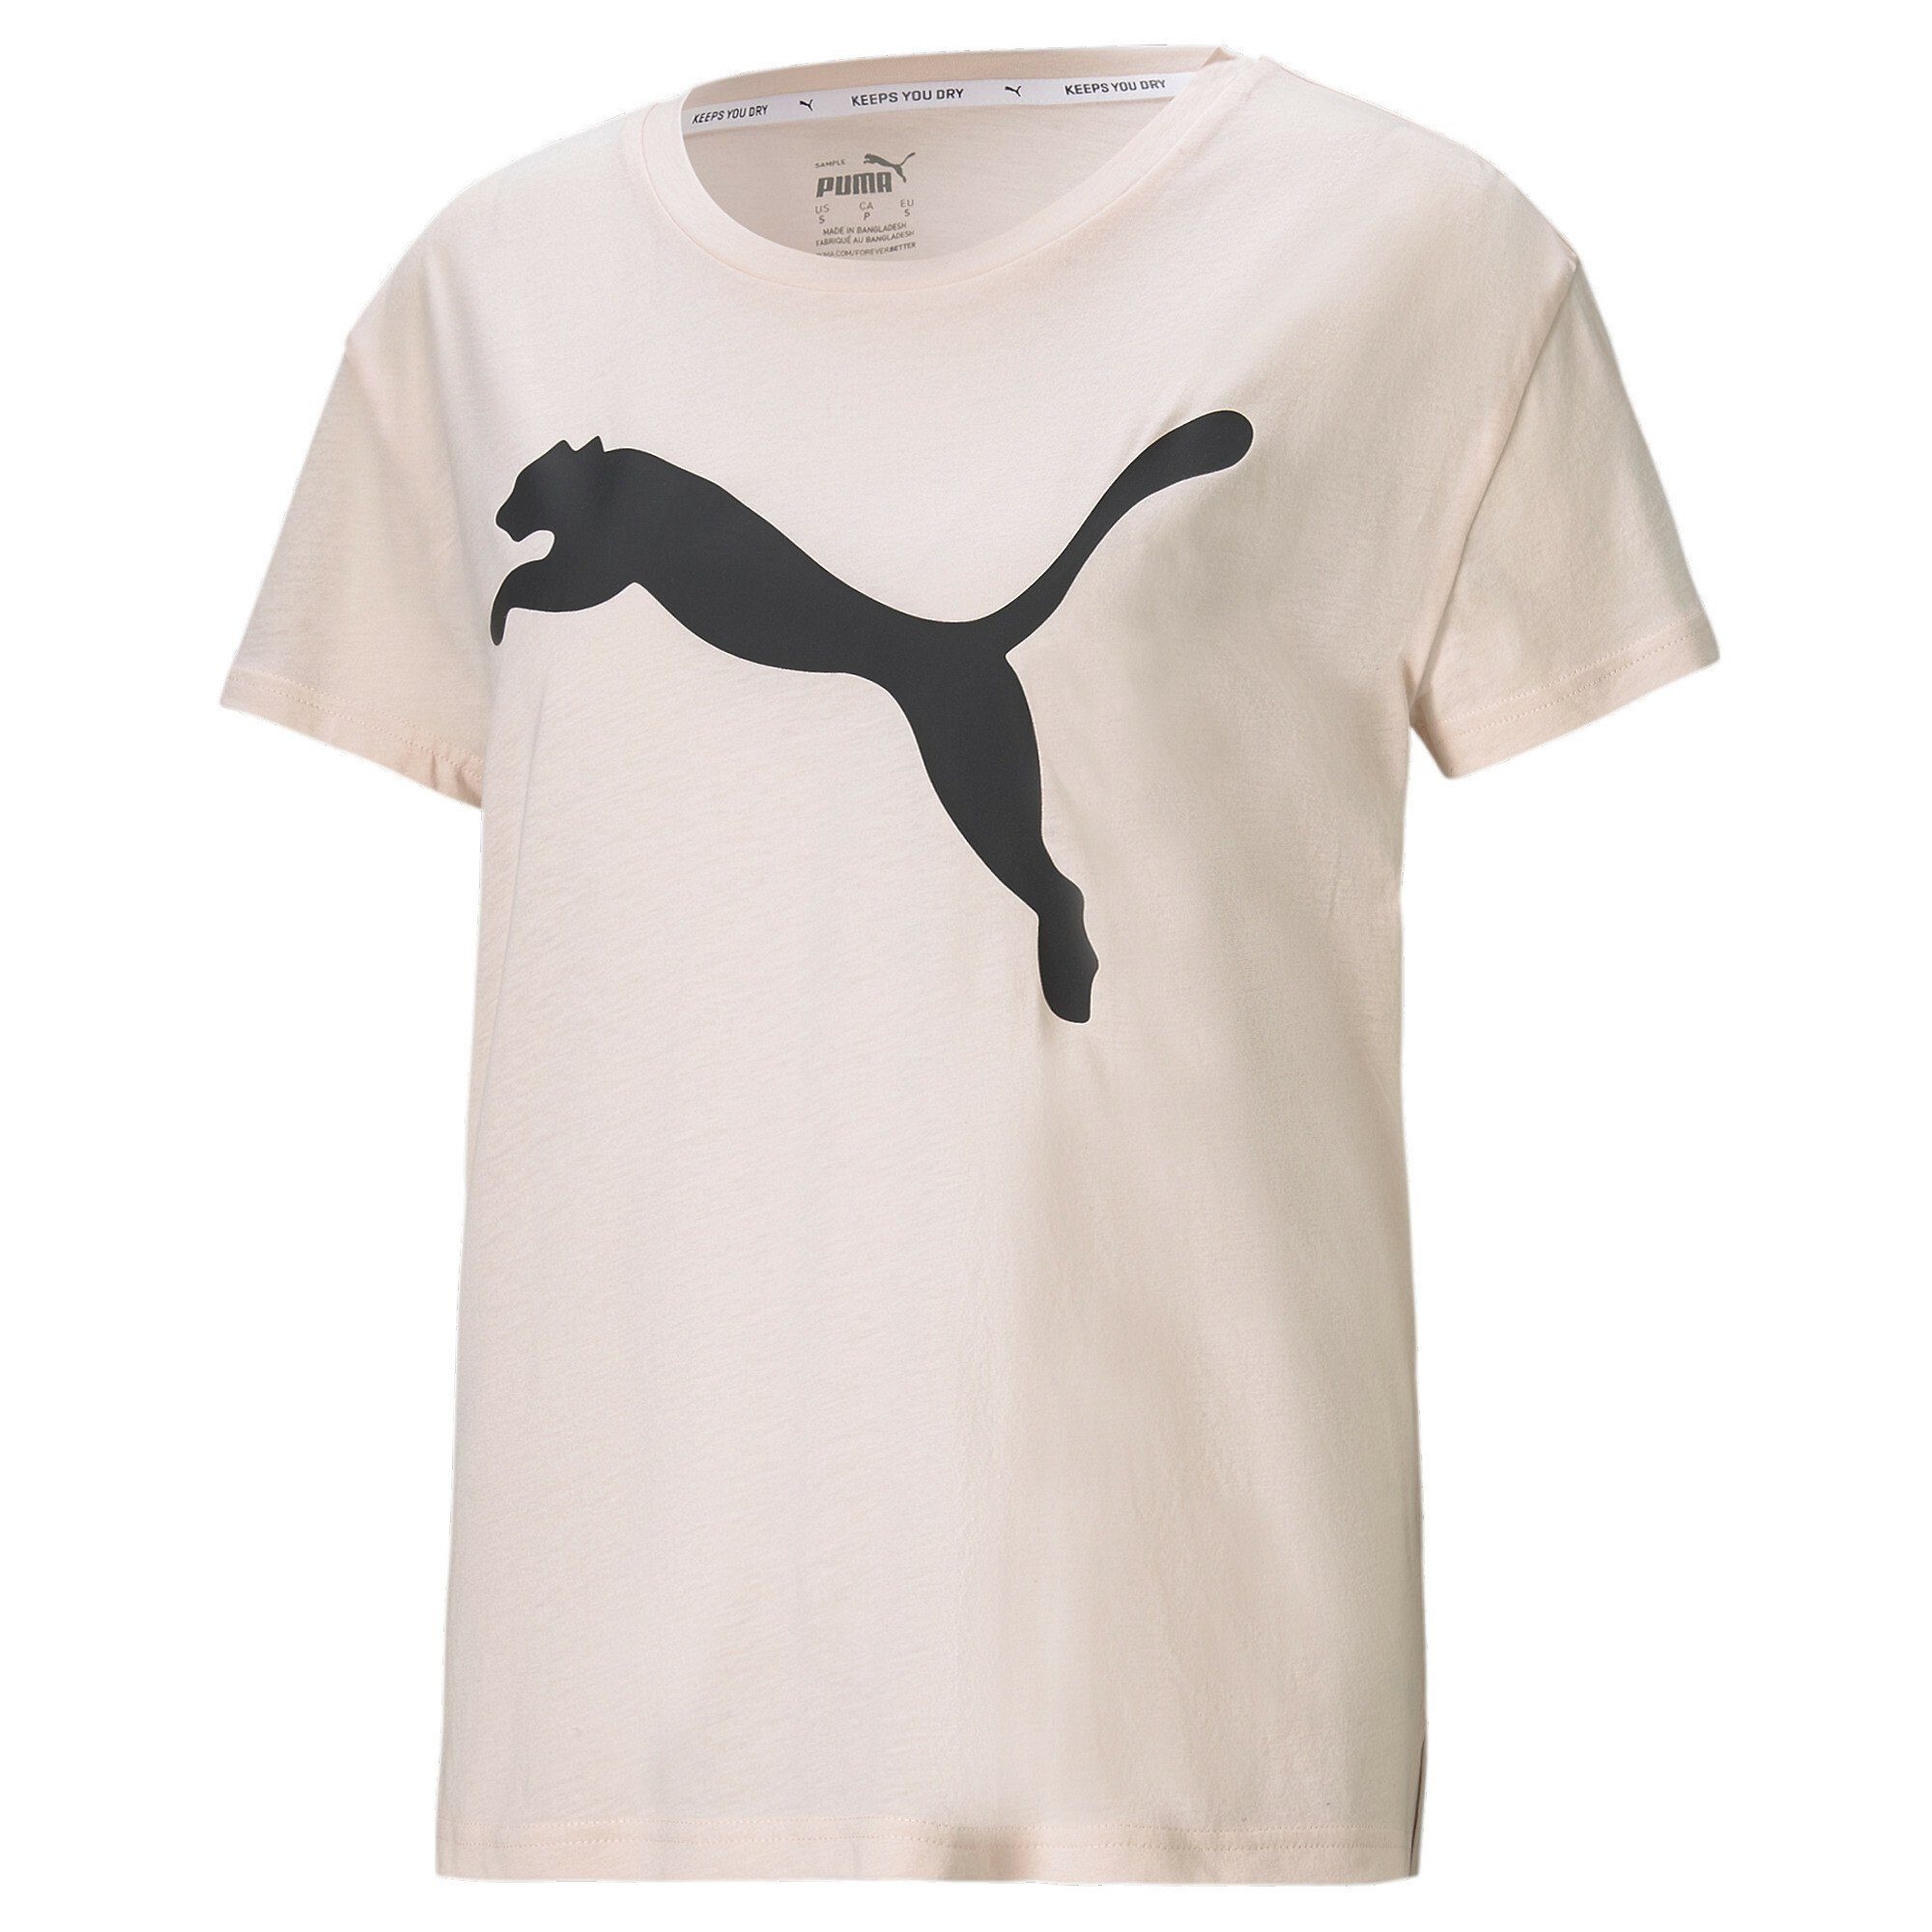 PUMA T-Shirts online kaufen | OTTO